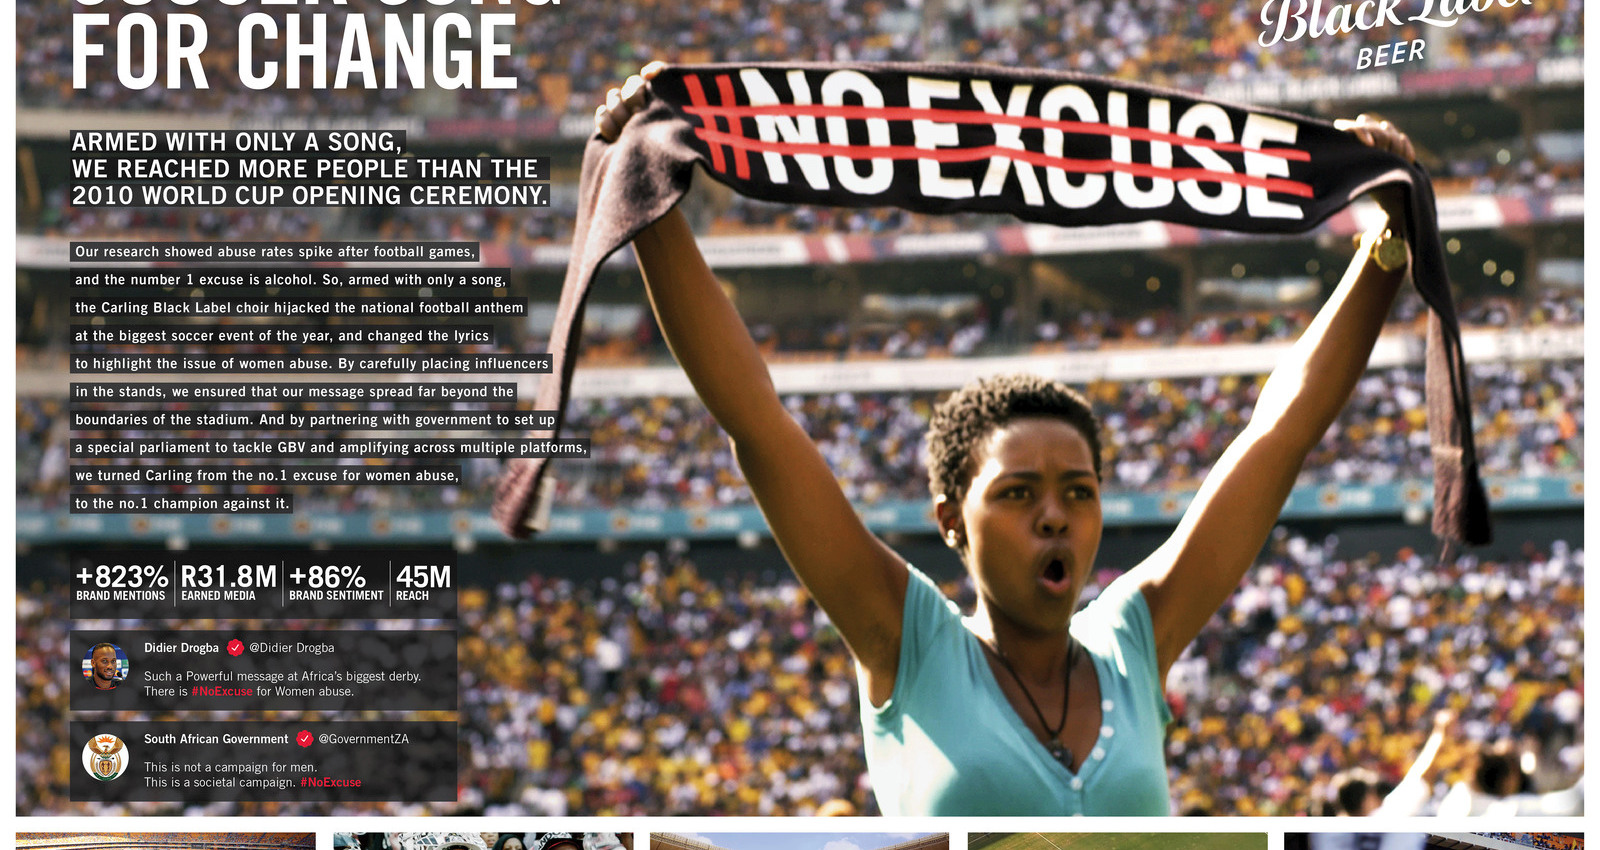 Carling Black Label Soccer Song for Change